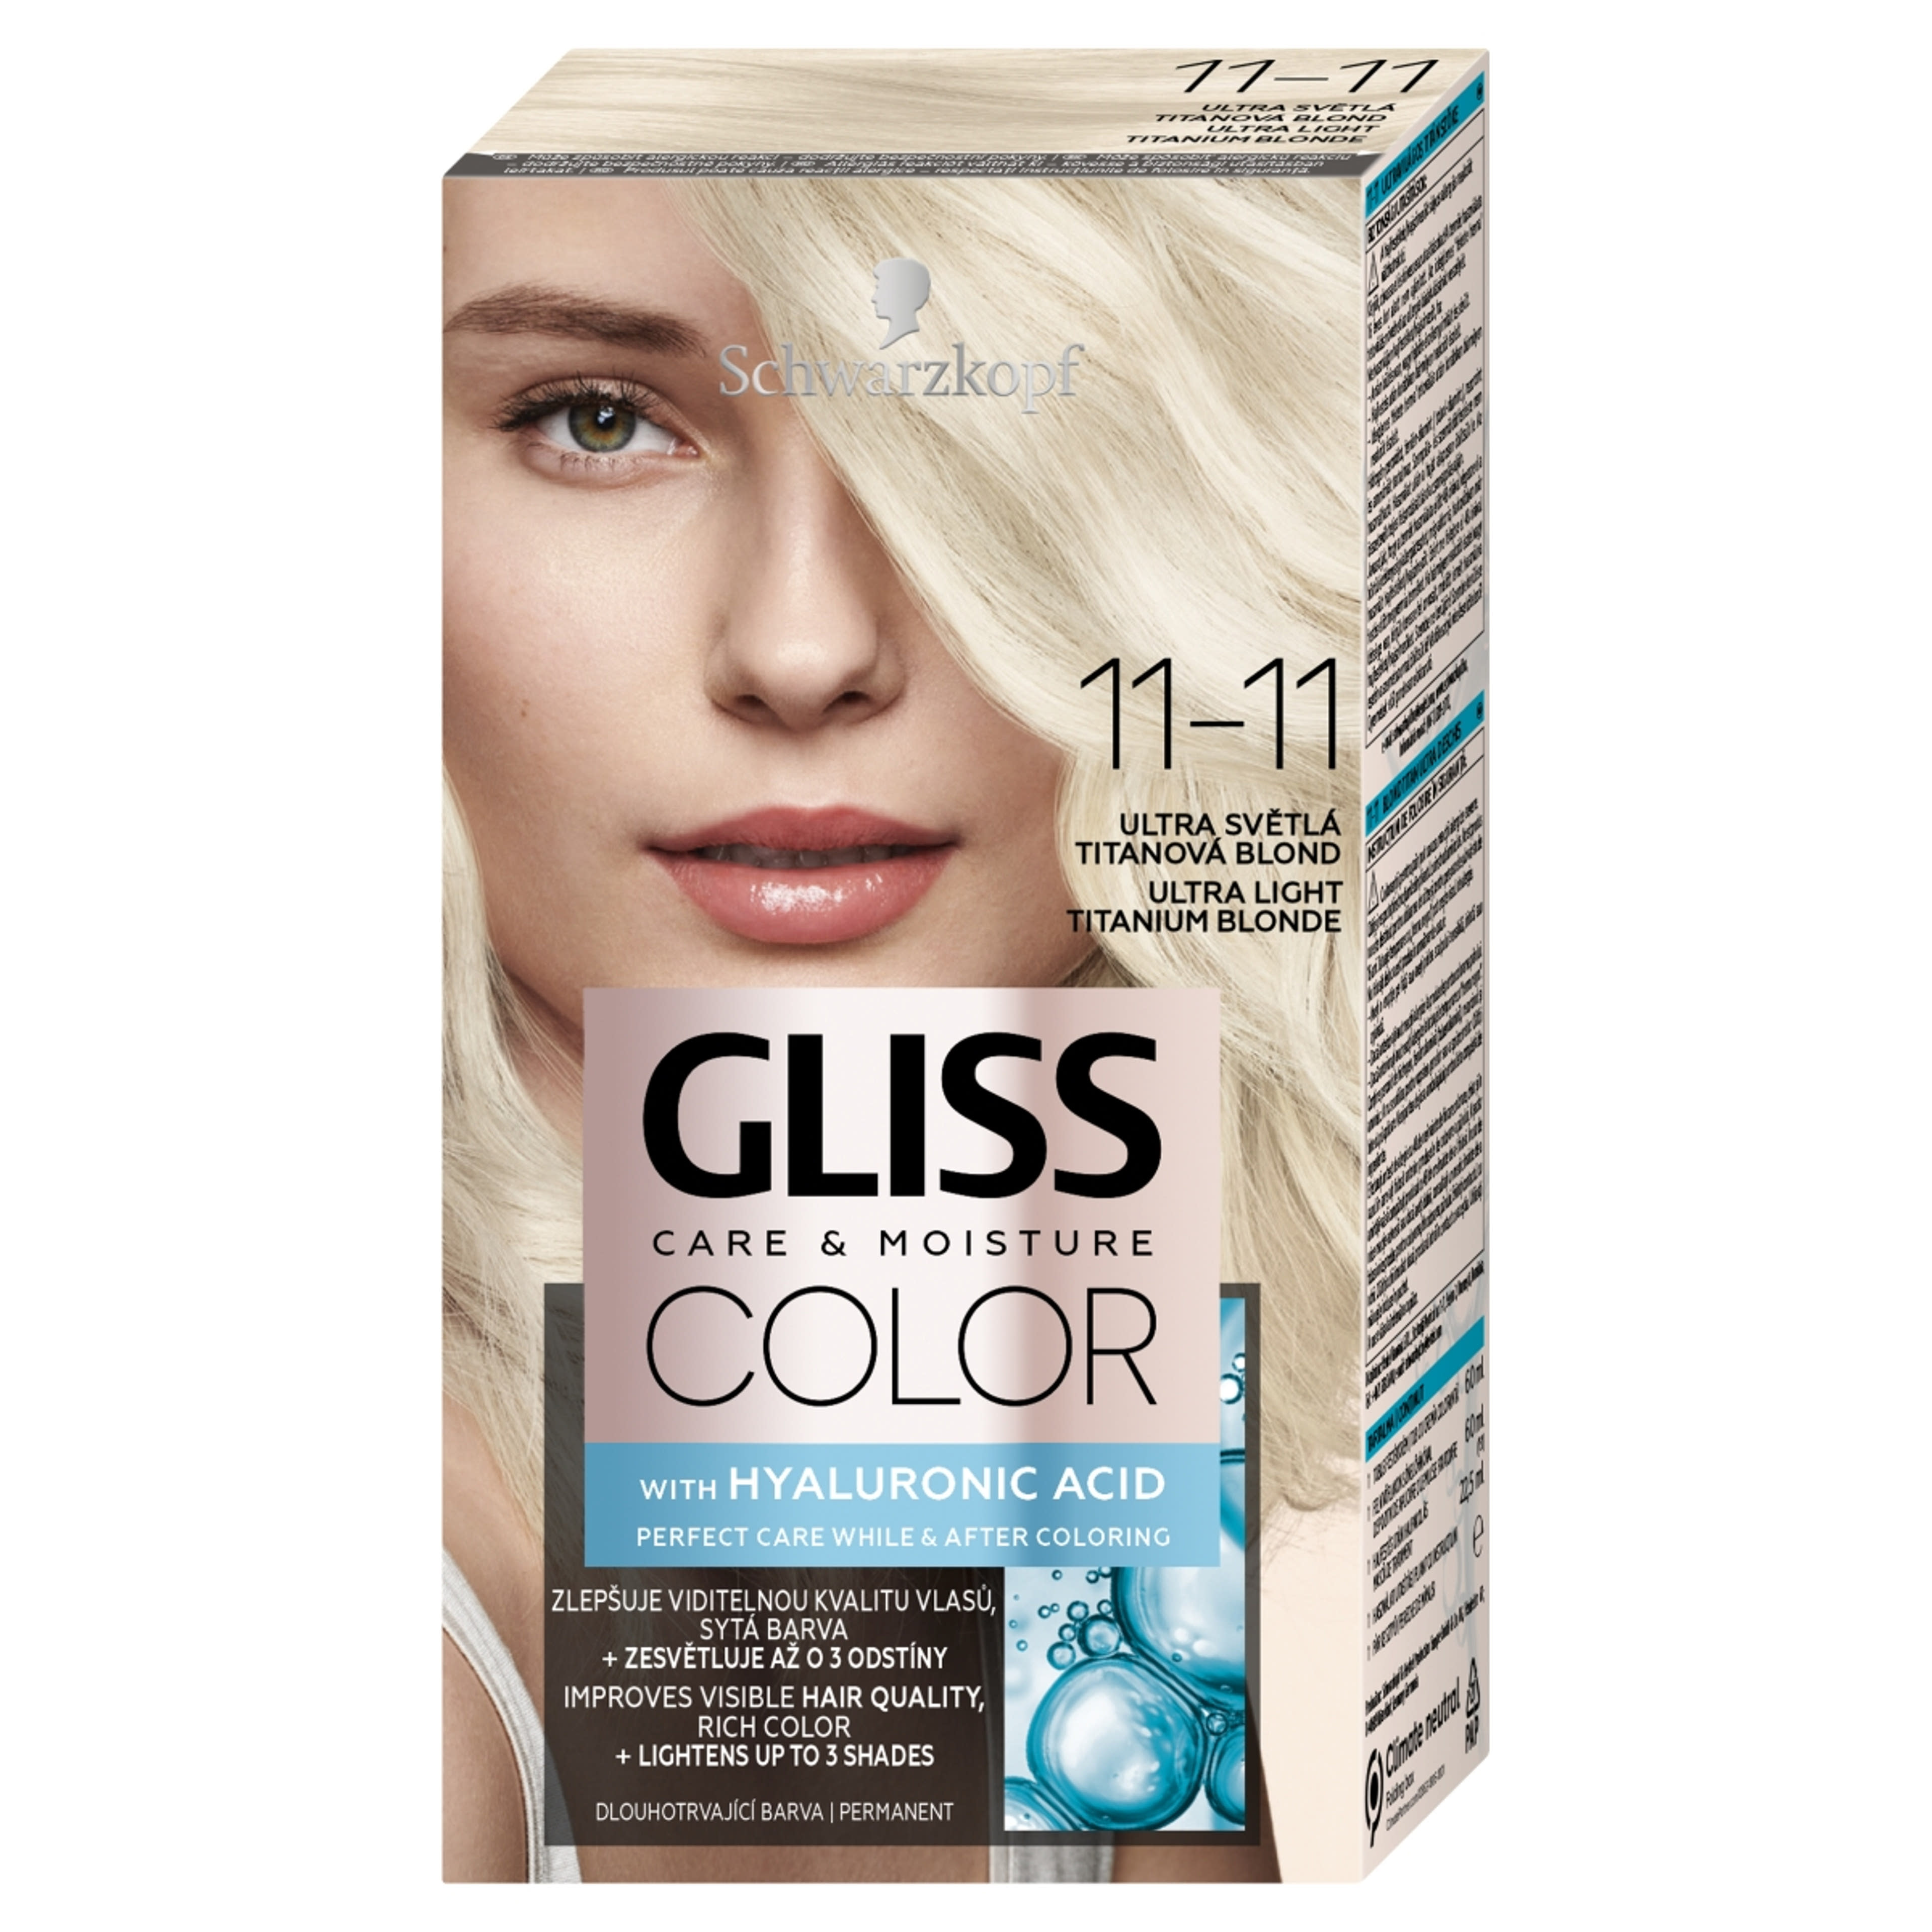 Schwarzkopf Gliss Color tartós hajfesték 11-11 ultravilágos titán szőke - 1 db